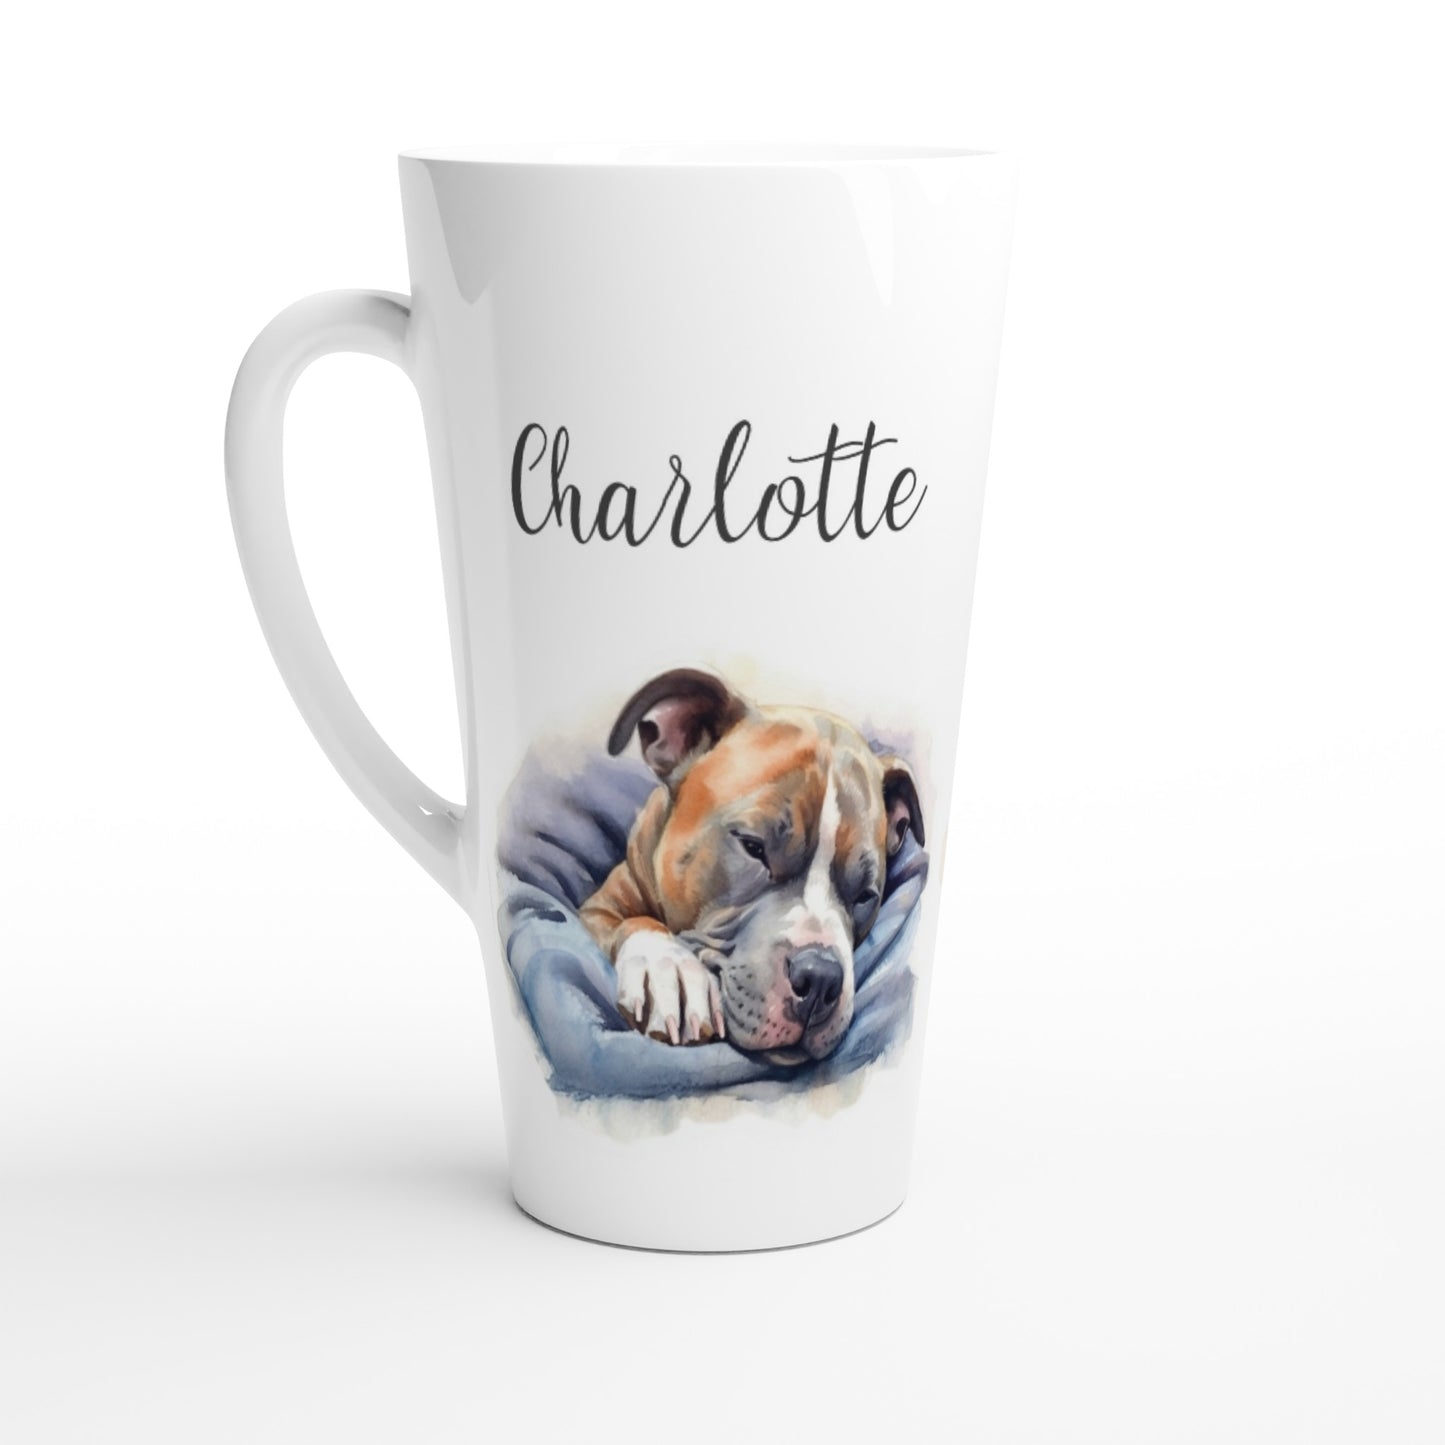 Staffy dog latte mug with name personalised 